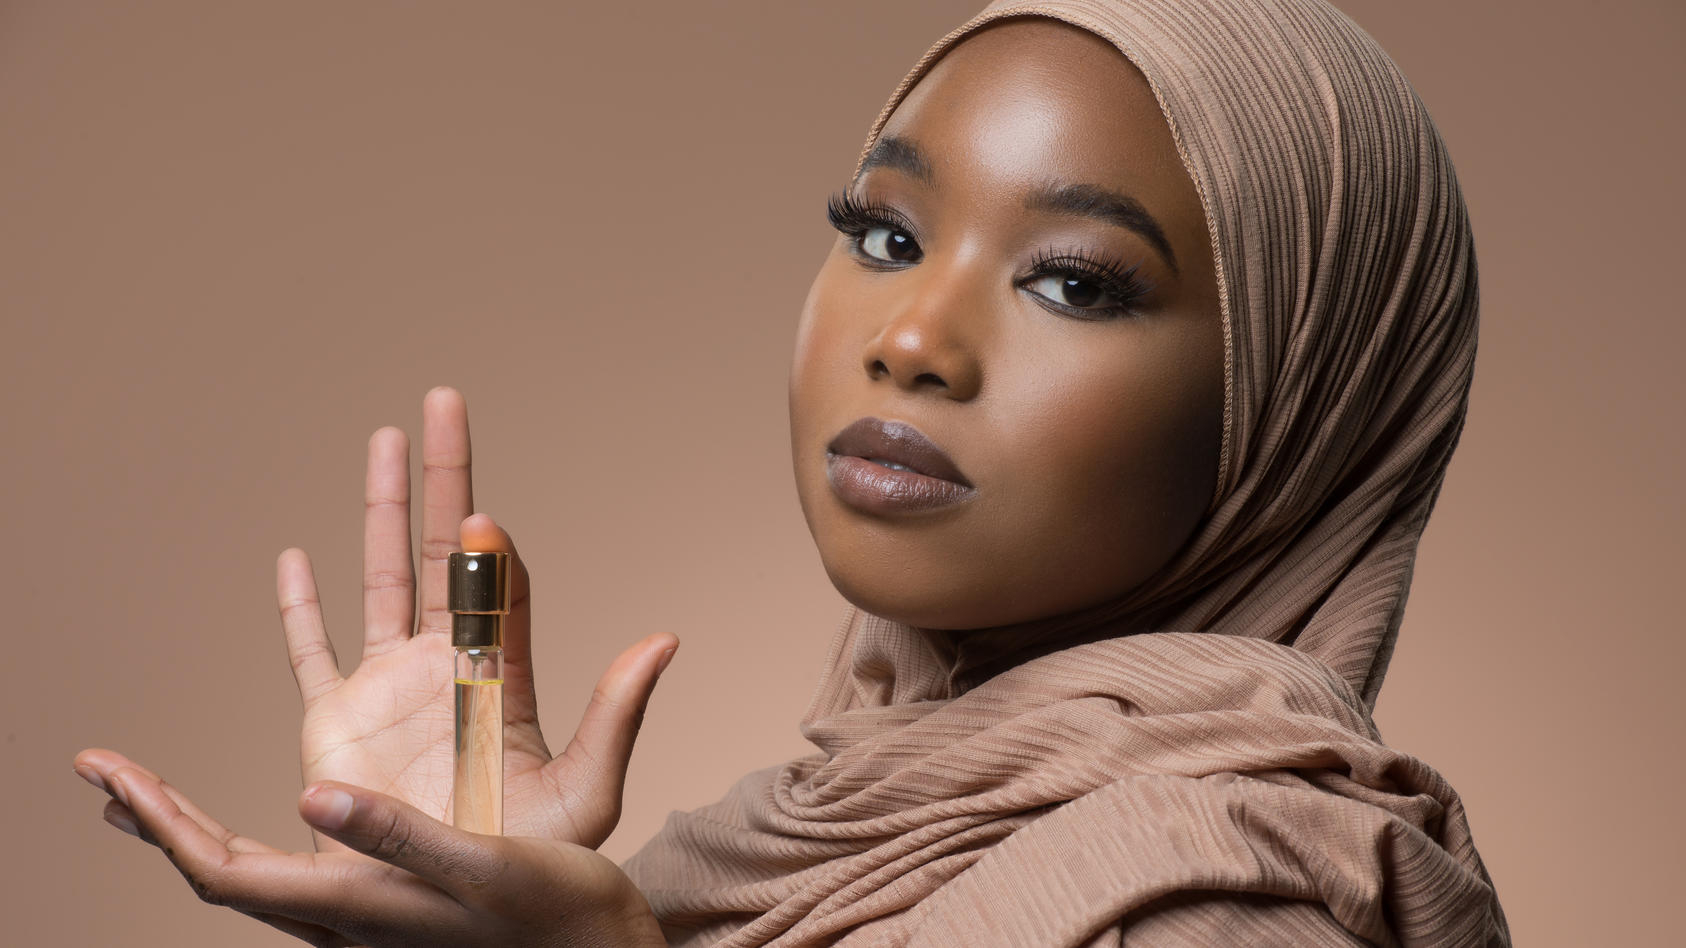 Frau mit Hijab, die eine Flasche Parfum in der Hand hält.